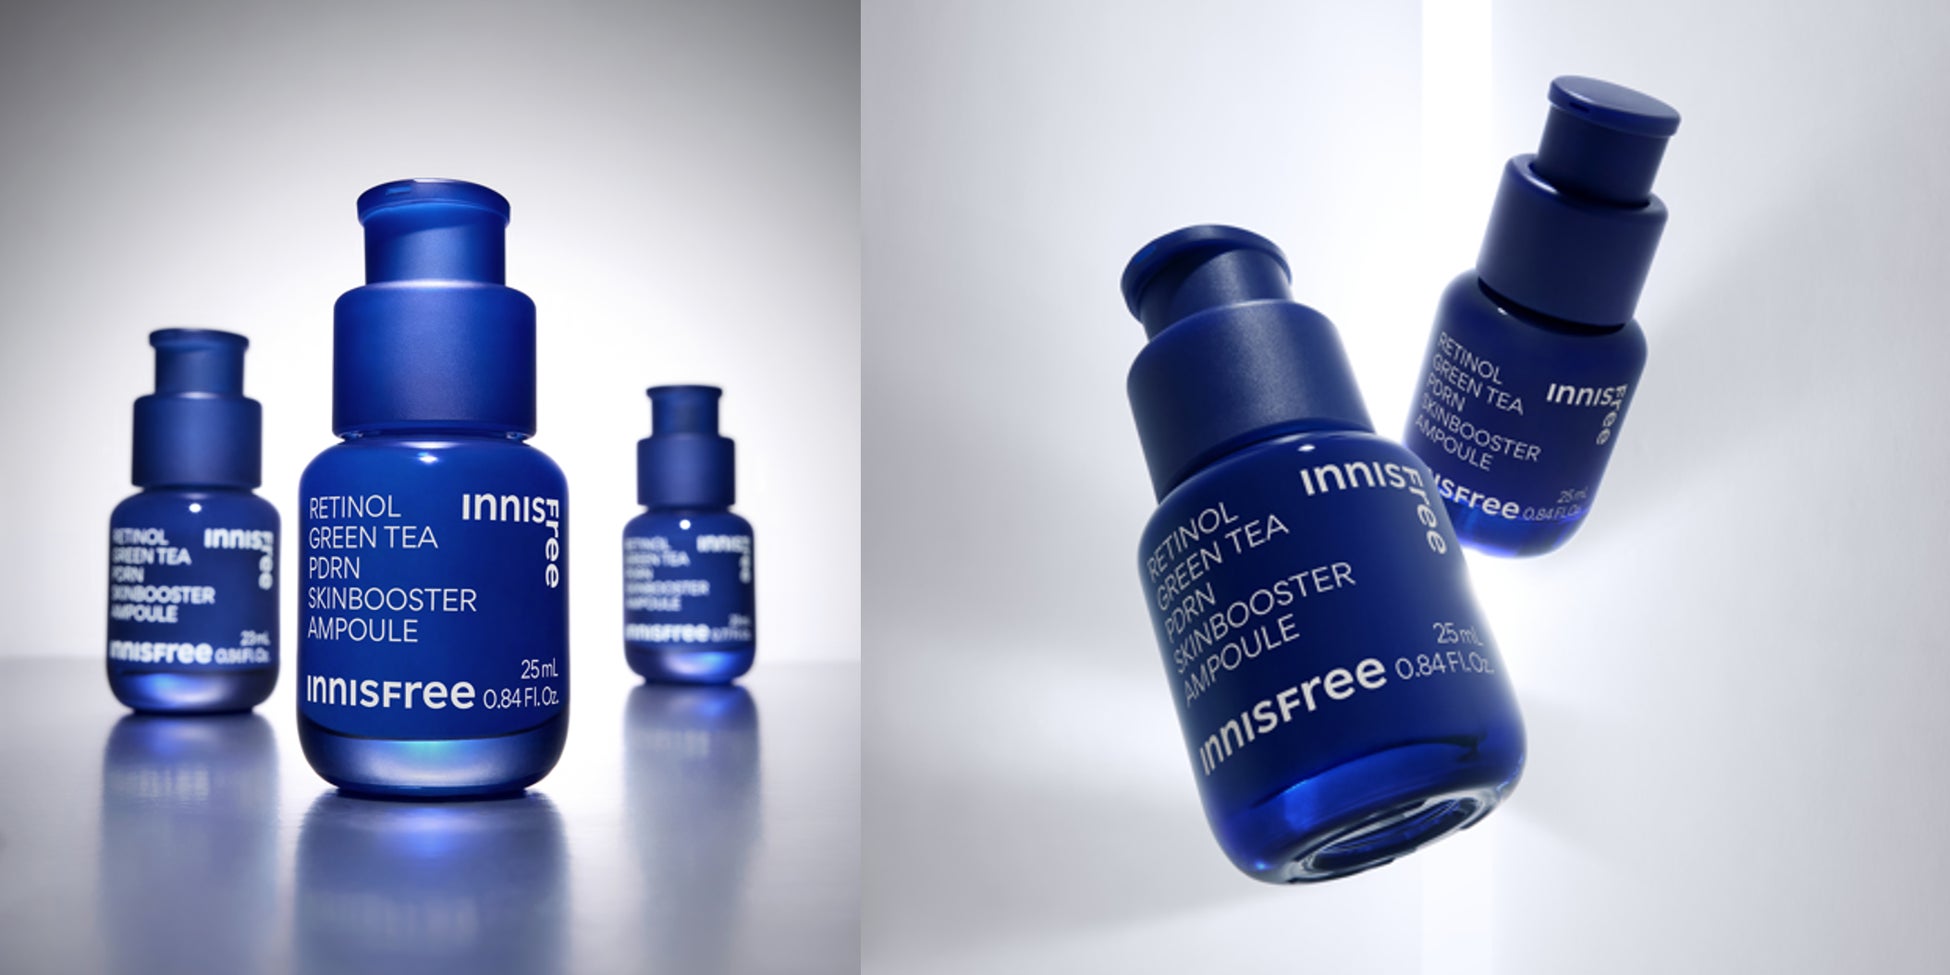 INNISFREEが美容クリニックの施術に着目した美容液「レチノール PDRN アドバンスド セラム」を9月1日に新発売